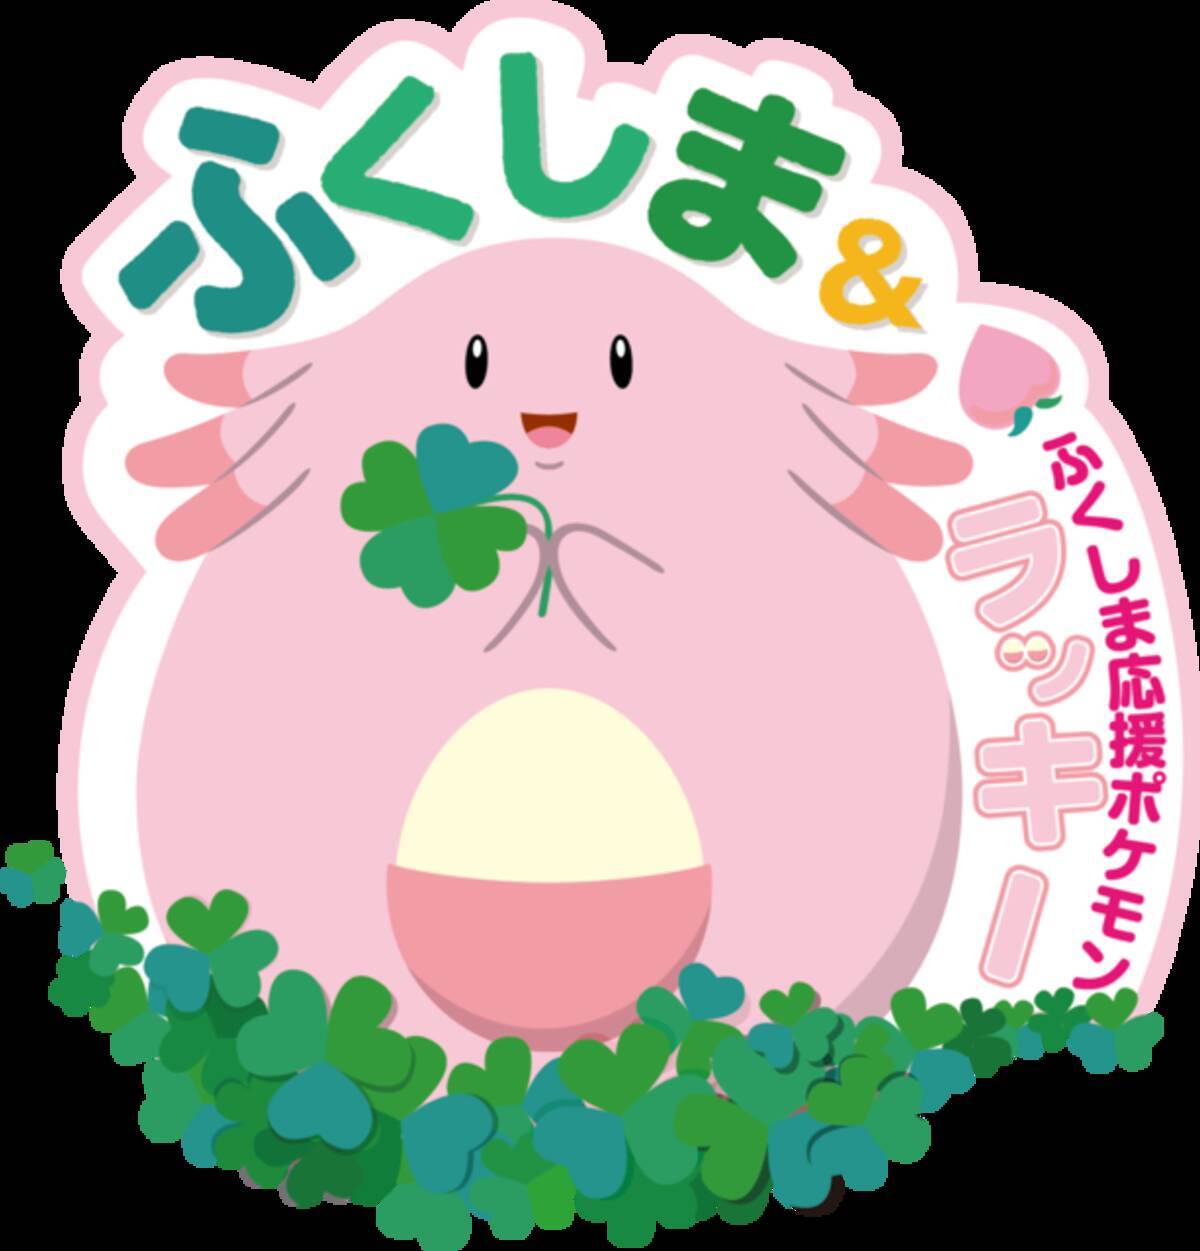 福島県 ラッキー 観光キャンペーンが7月22日から開催 ポケモンgo との連動や謎解きイベントも 19年7月12日 エキサイトニュース